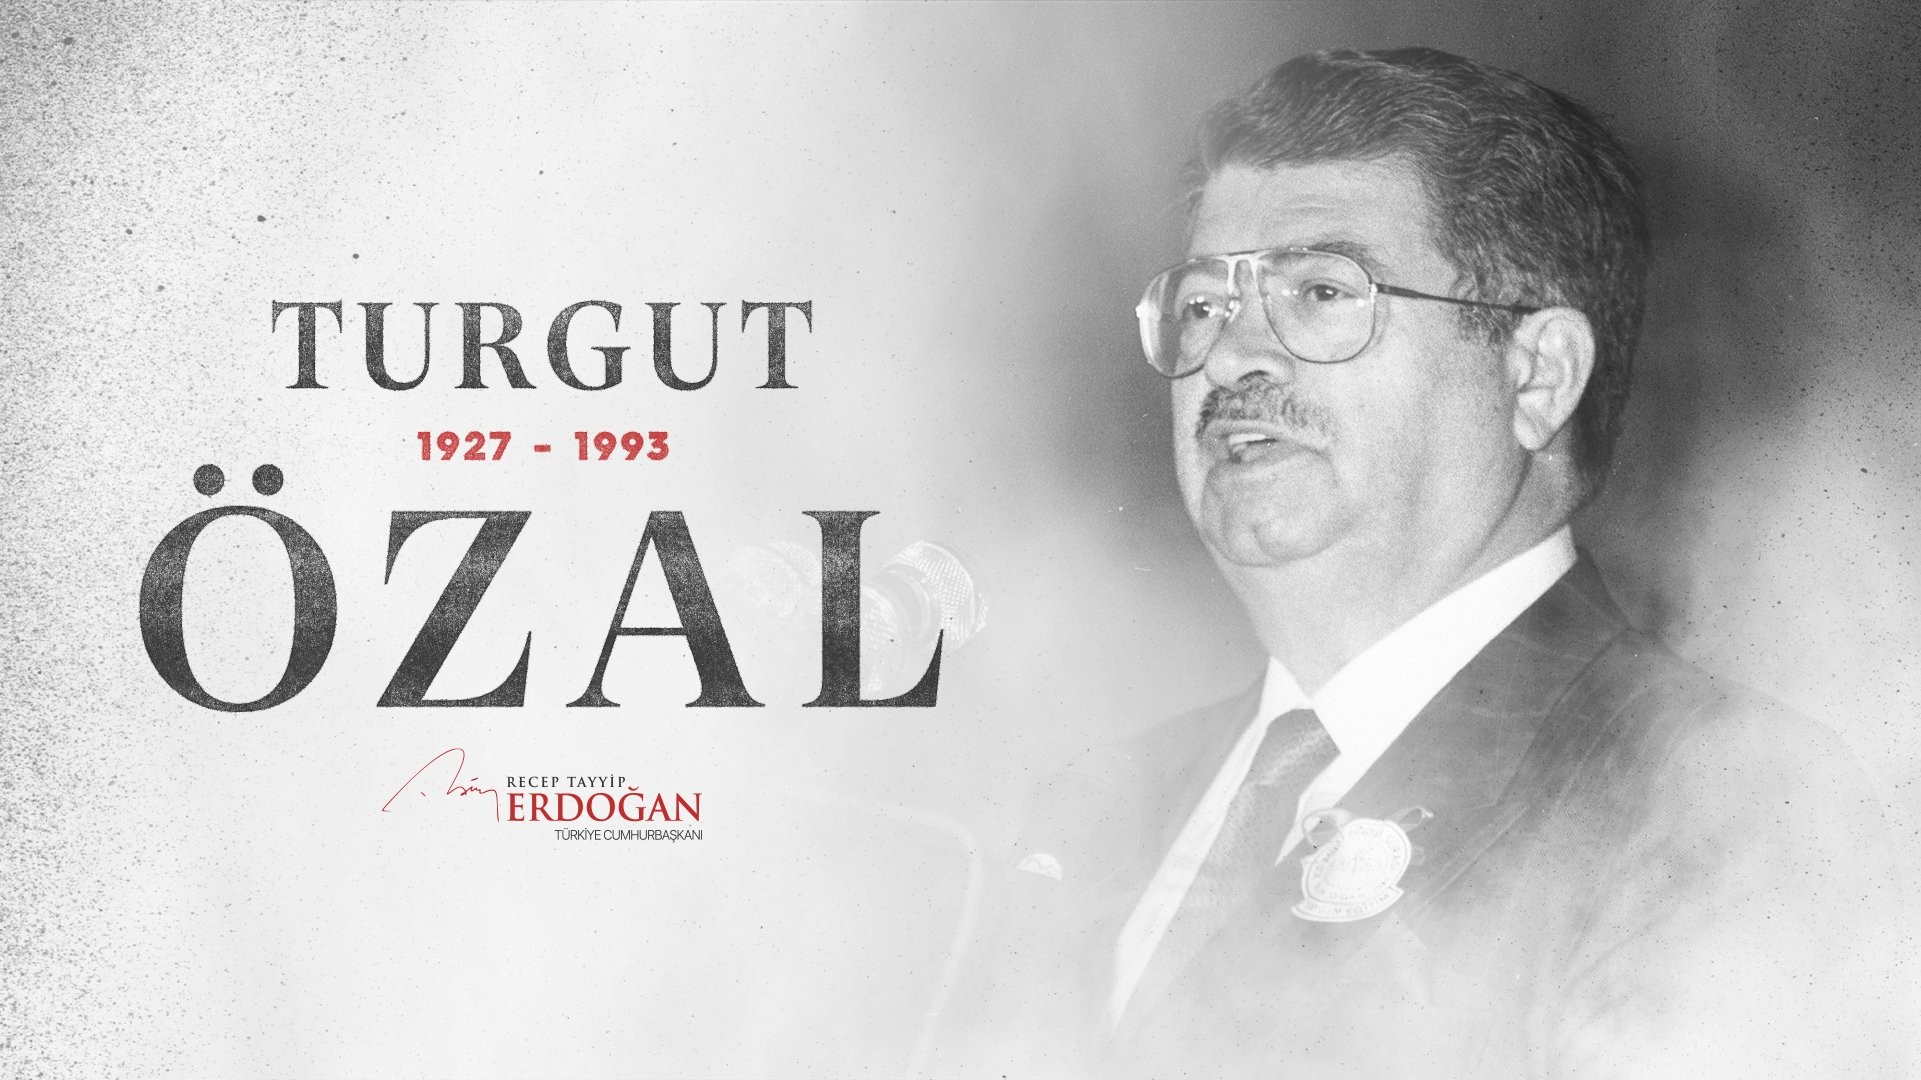 Cumhurbaşkanı Erdoğan’dan “Turgut Özal” paylaşımı